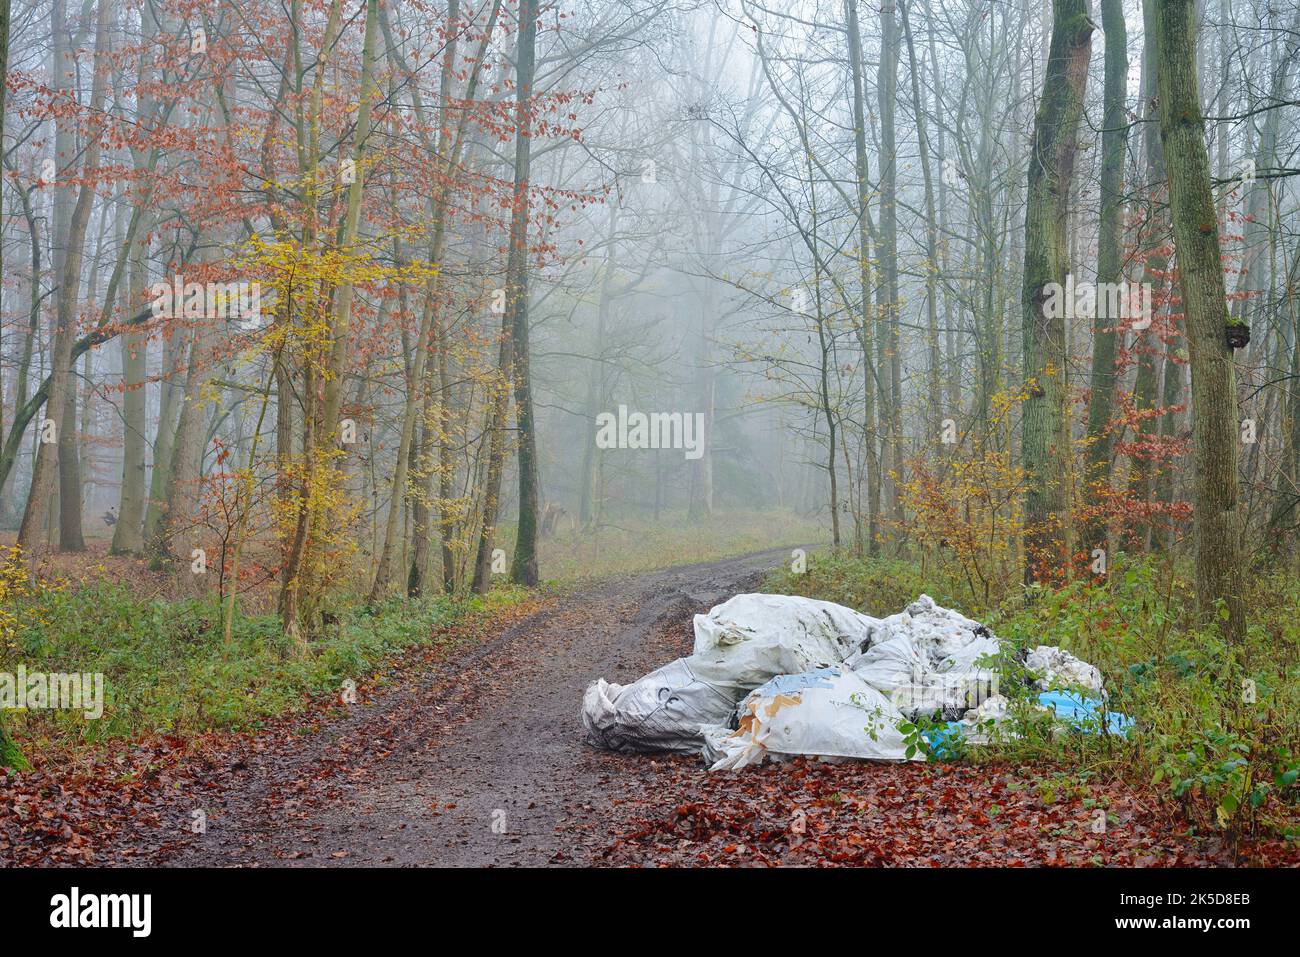 Inquinamento ambientale, smaltimento illegale di rifiuti su un percorso forestale, Renania settentrionale-Vestfalia, Germania Foto Stock